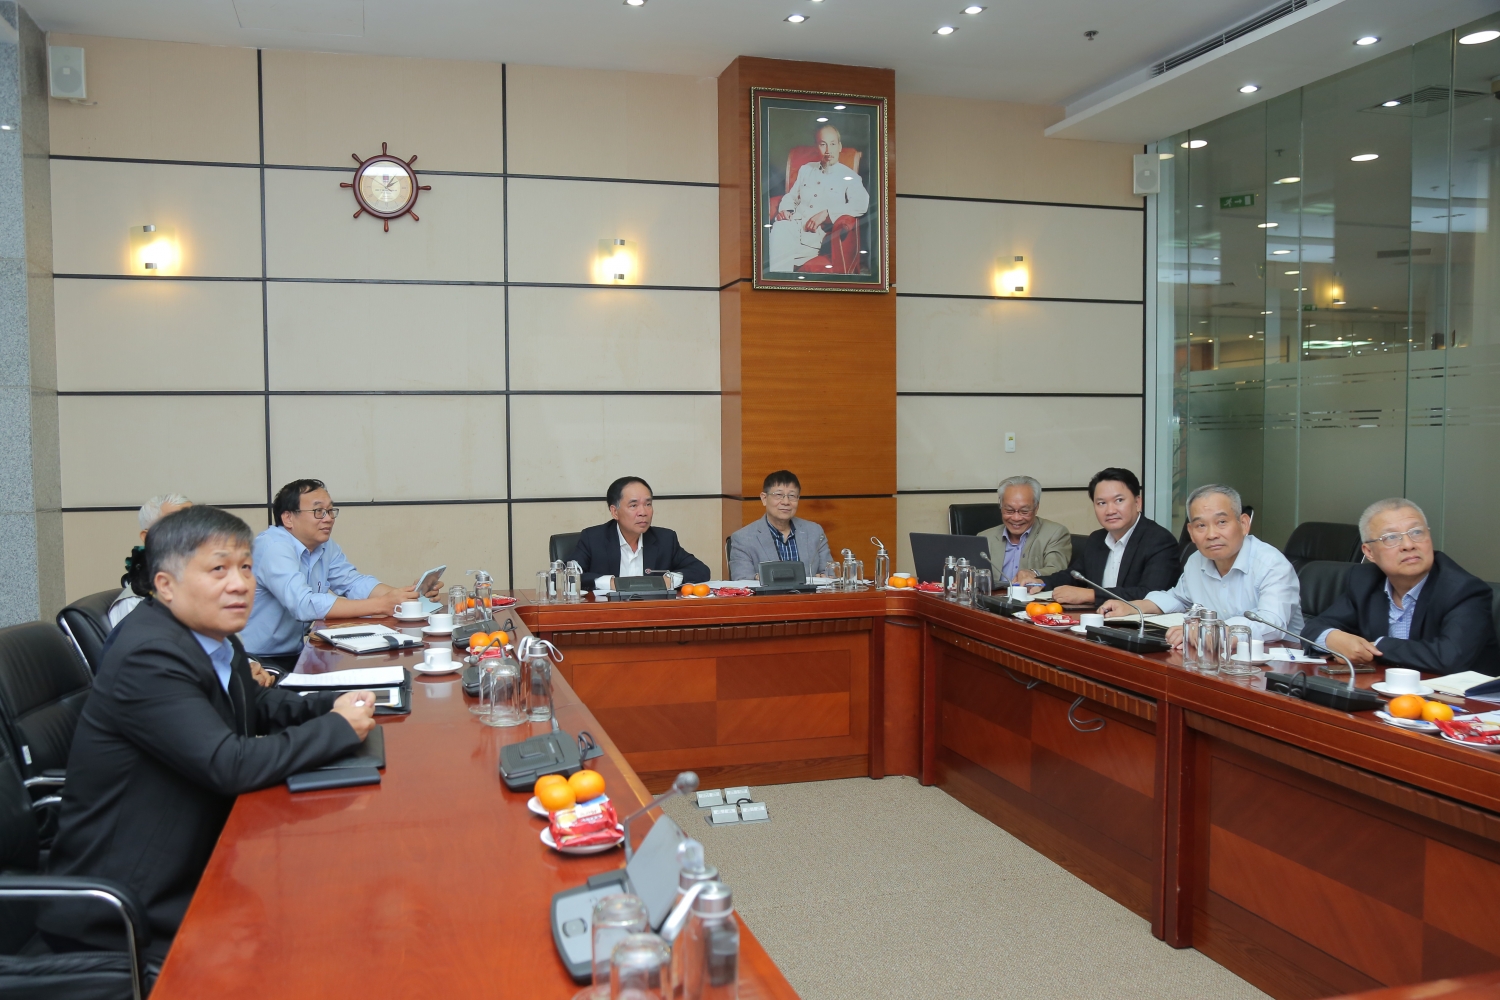 Hội Dầu khí Việt Nam đóng góp ý kiến sửa đổi Nghị định 124 về đầu tư ra nước ngoài trong hoạt động dầu khí